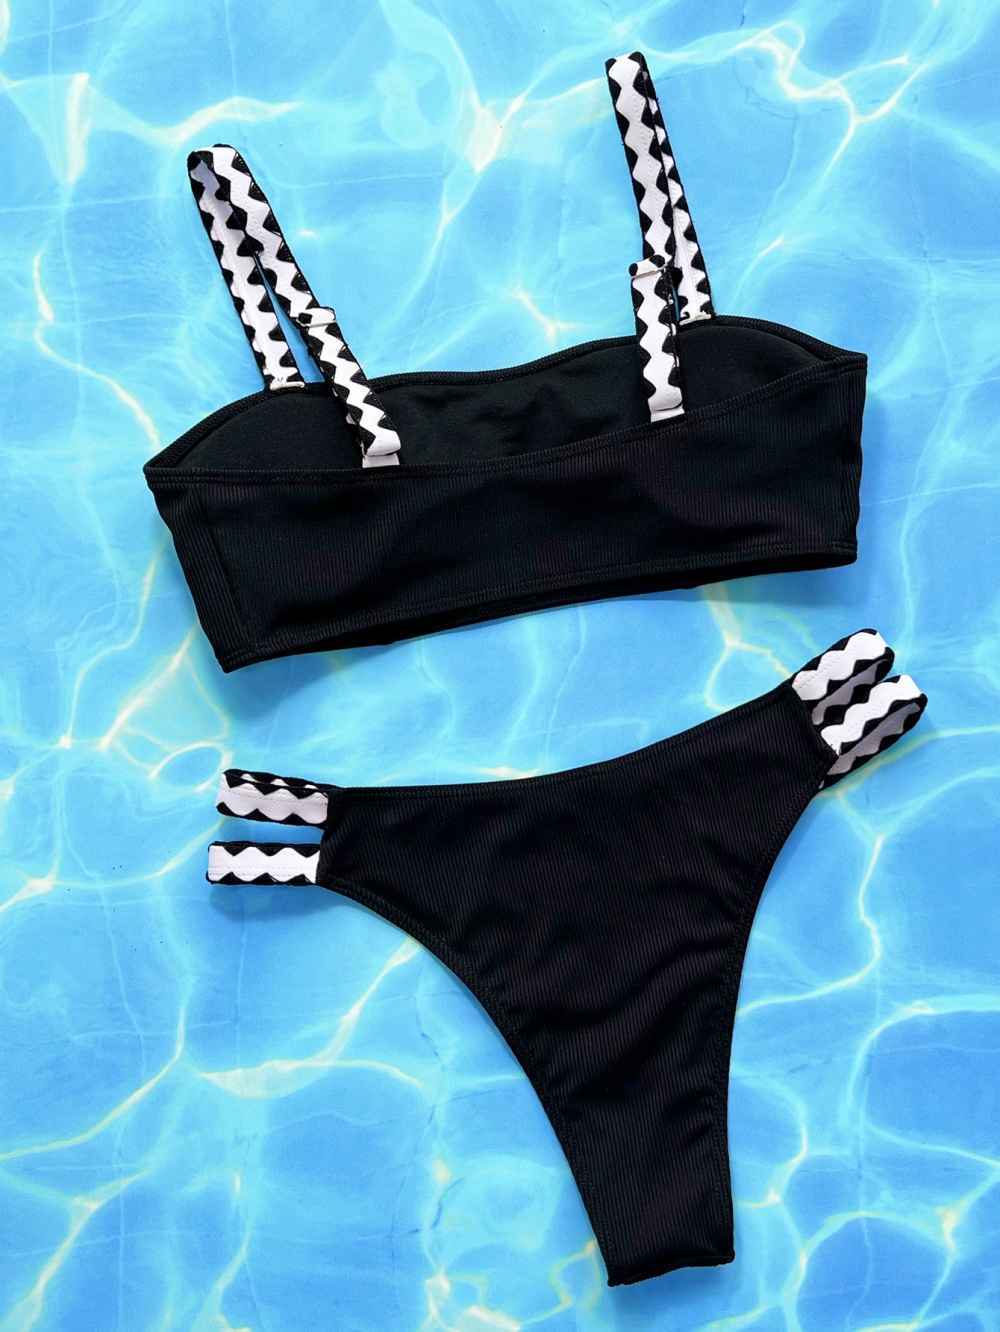 European style separate bikini swimwear for women